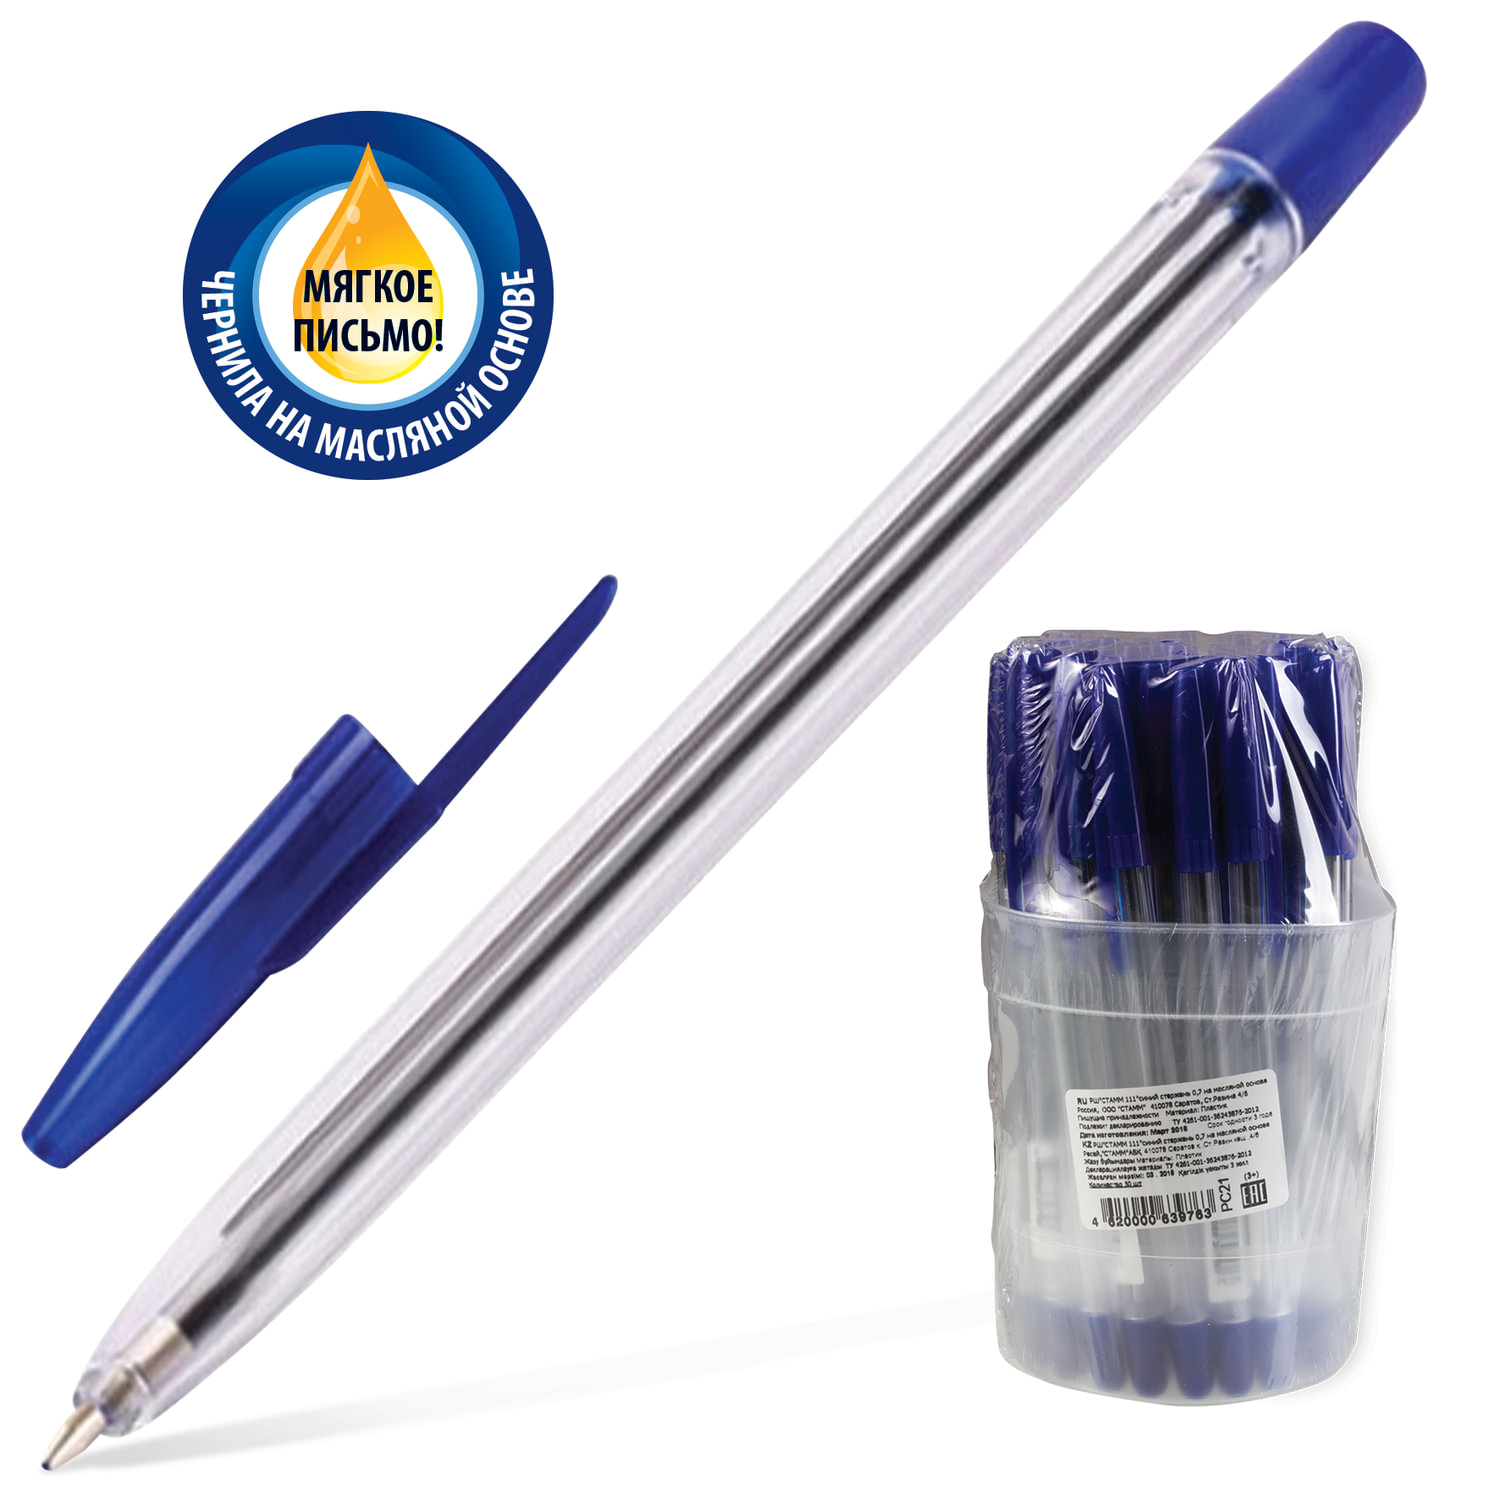 Ручка с прозрачным корпусом. Ручка шариковая СТАММ "111" синяя, 1,0мм, прозрачный корпус. Ручка СТАММ рс01. Ручка шариковая СТАММ синяя. Шариковая ручка СТАММ 111 офис синяя линия 0.7 мм масляные чернила.